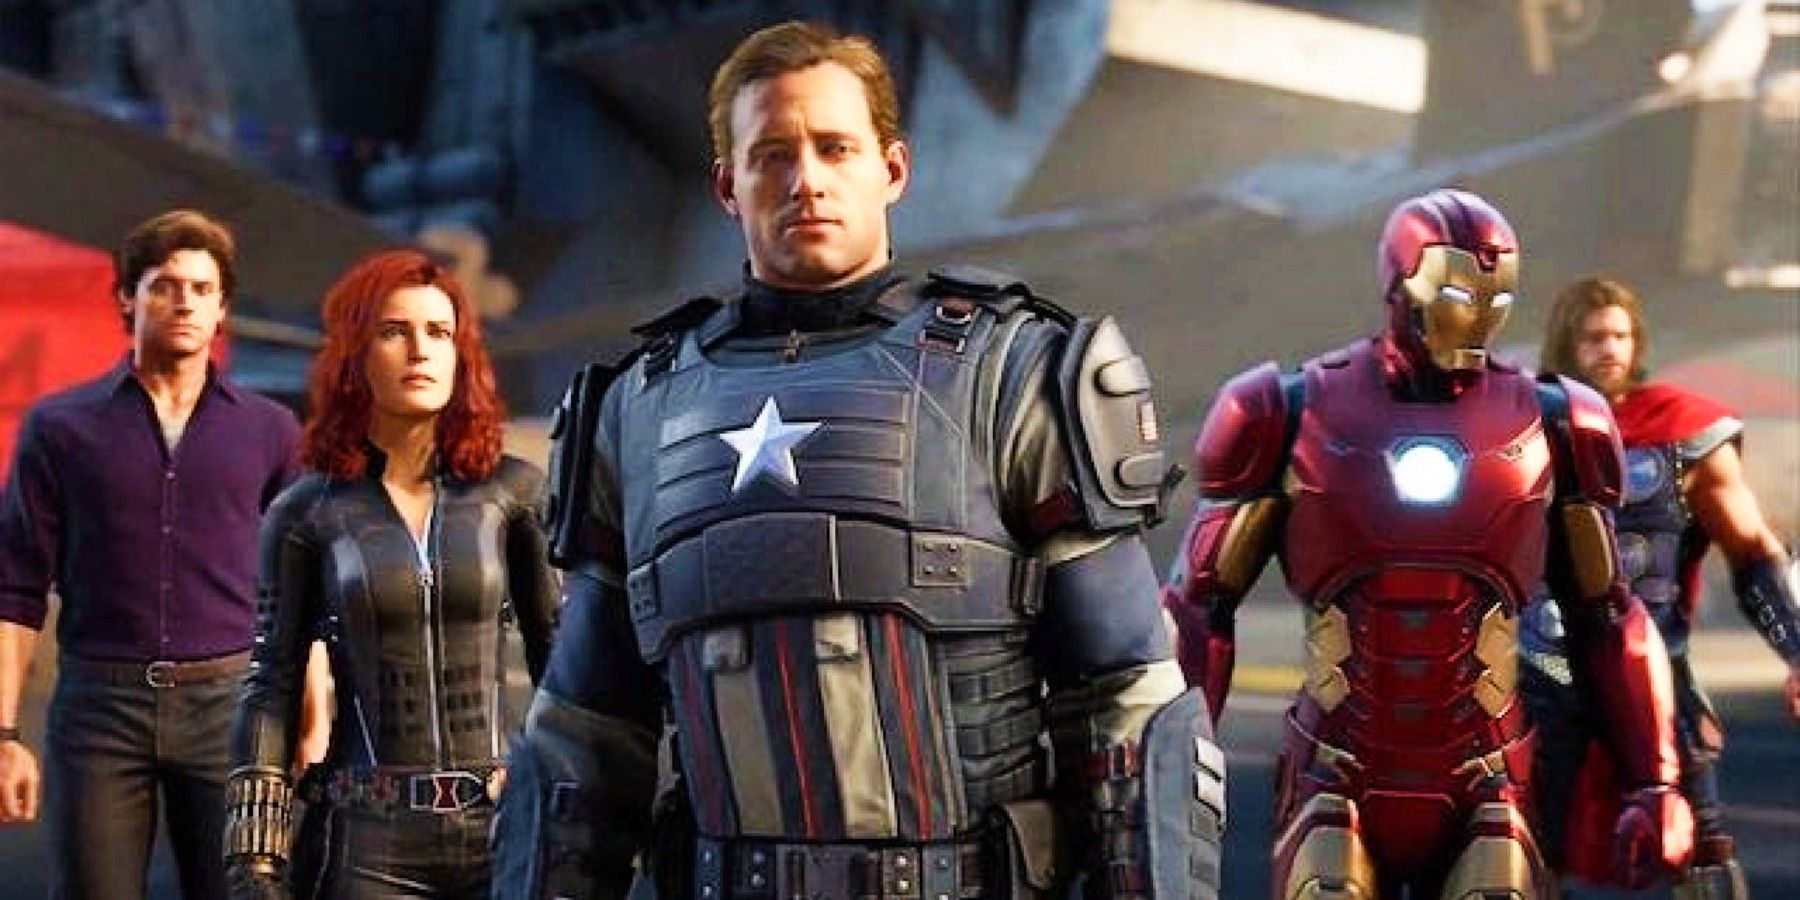 the team in Marvel's Avengers